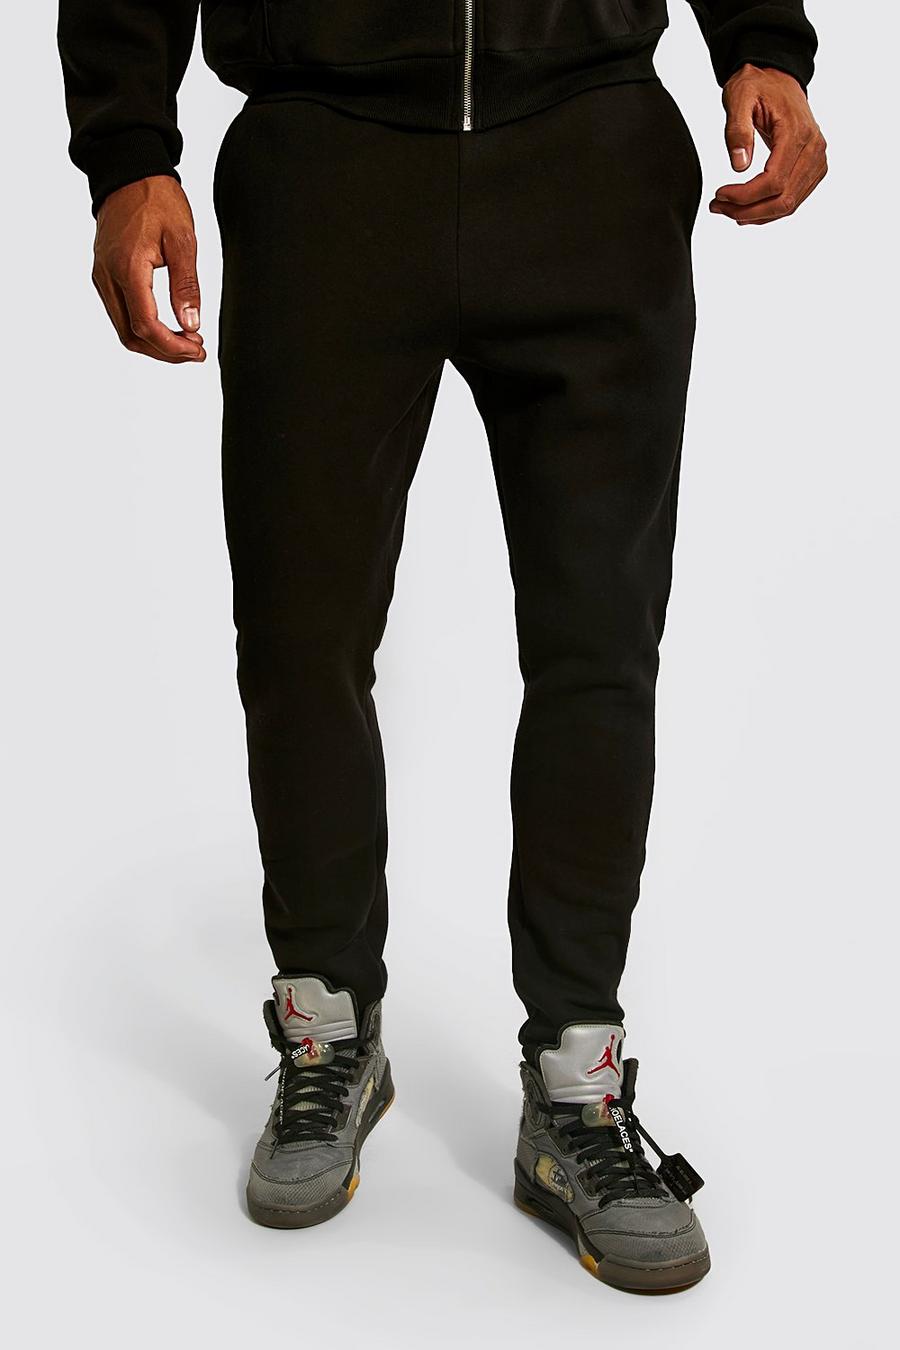 שחור מכנסי ריצה עם הדפס בולט בשני צבעים לגברים גבוהים image number 1